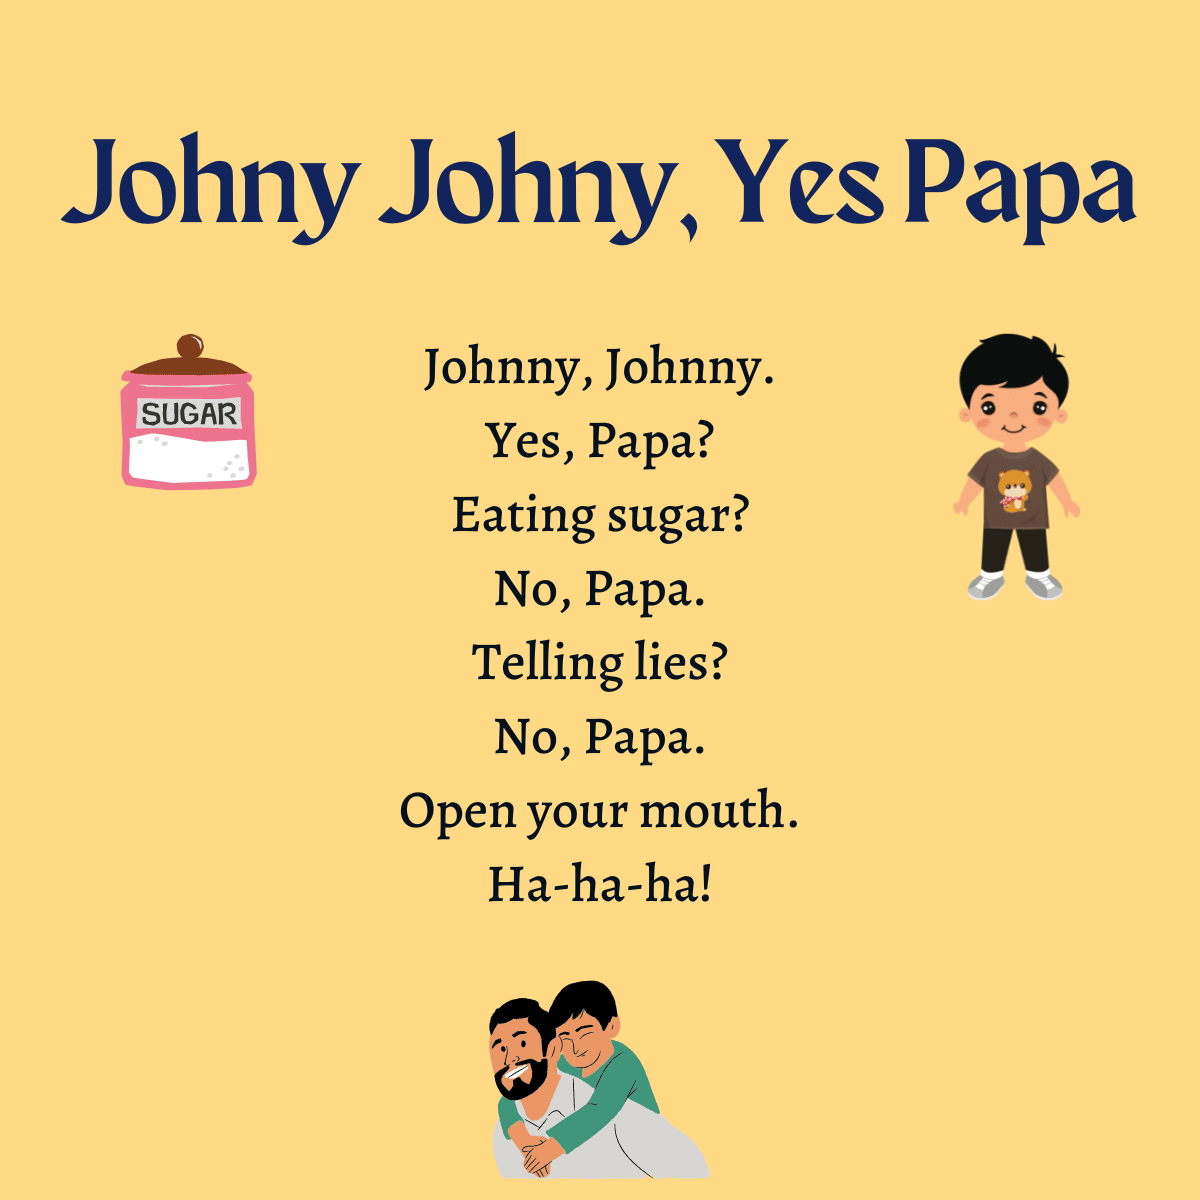 Johny Johny, Yes Papa 1200 x 1200